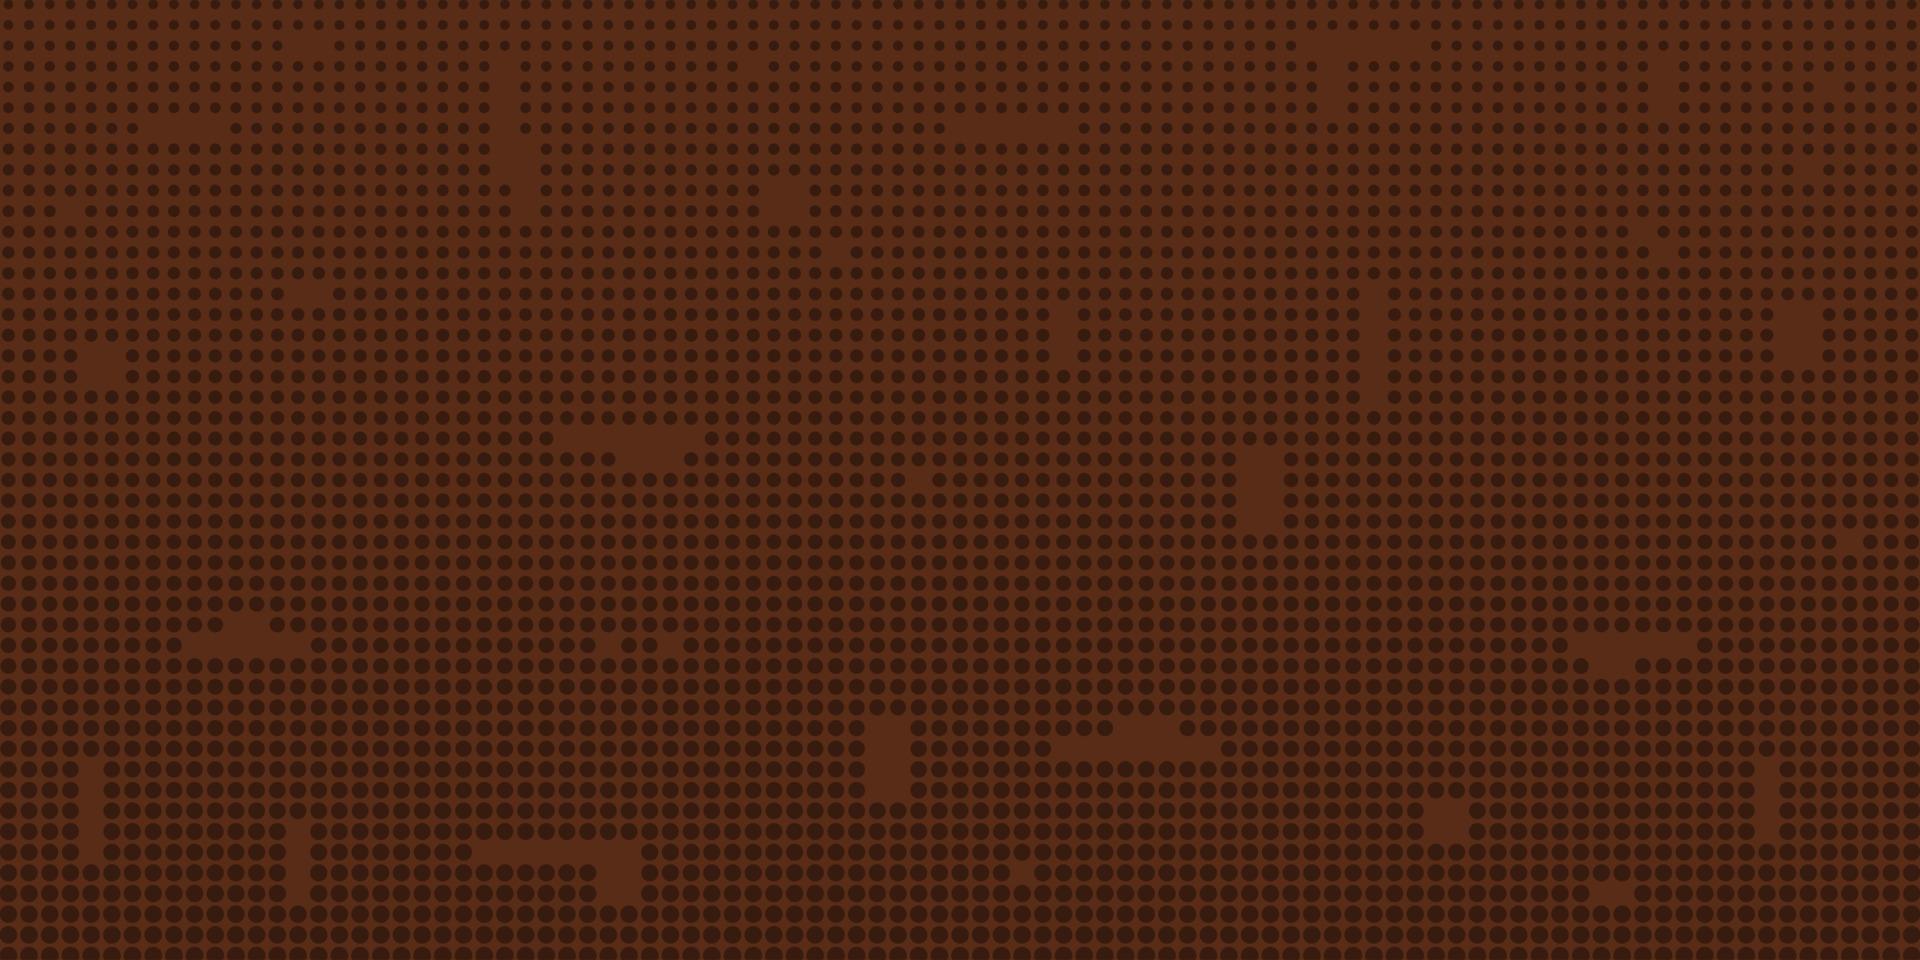 Schokolade braun horizontal Hintergrund mit Kreise abnehmend nach oben und klein Defekte. kreativ Stelle Design von Hintergrund, Netz Hintergrund, usw. Vektor Illustration.